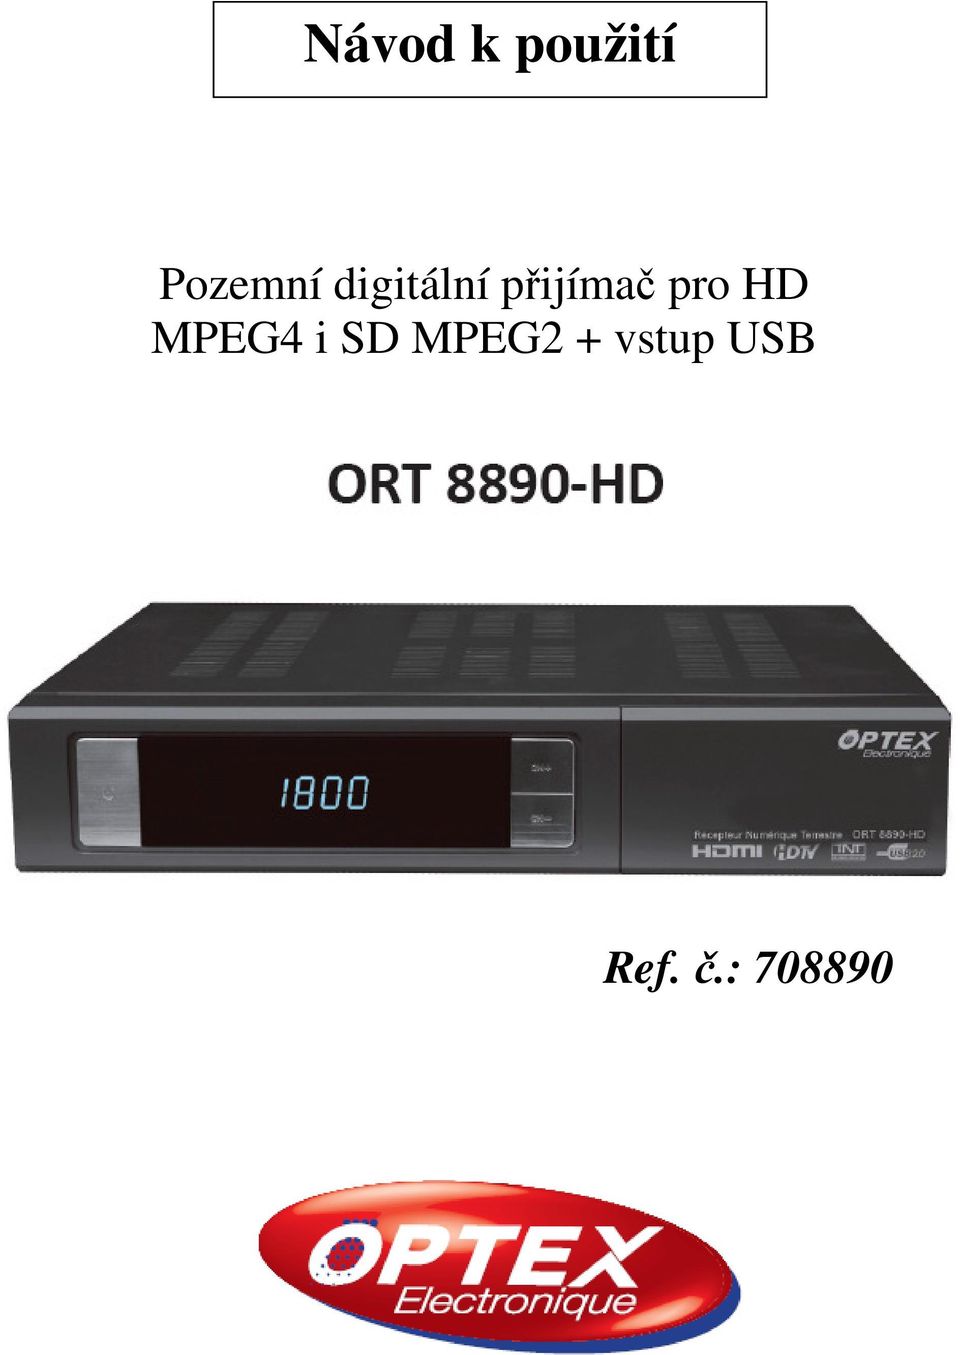 HD MPEG4 i SD MPEG2 +